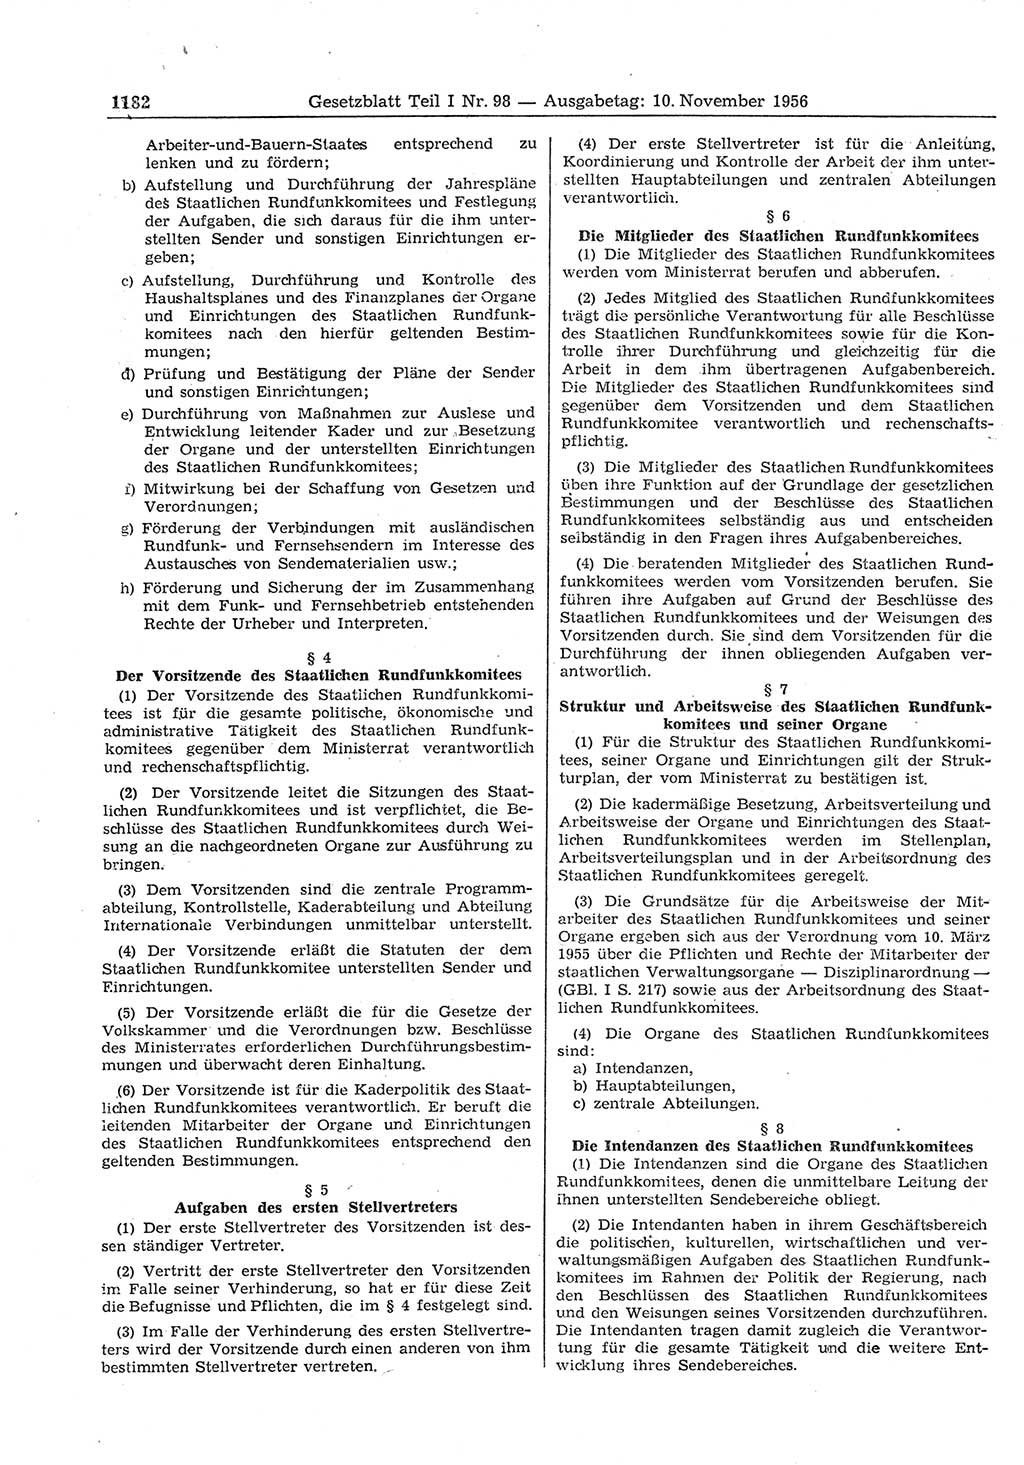 Gesetzblatt (GBl.) der Deutschen Demokratischen Republik (DDR) Teil Ⅰ 1956, Seite 1182 (GBl. DDR Ⅰ 1956, S. 1182)